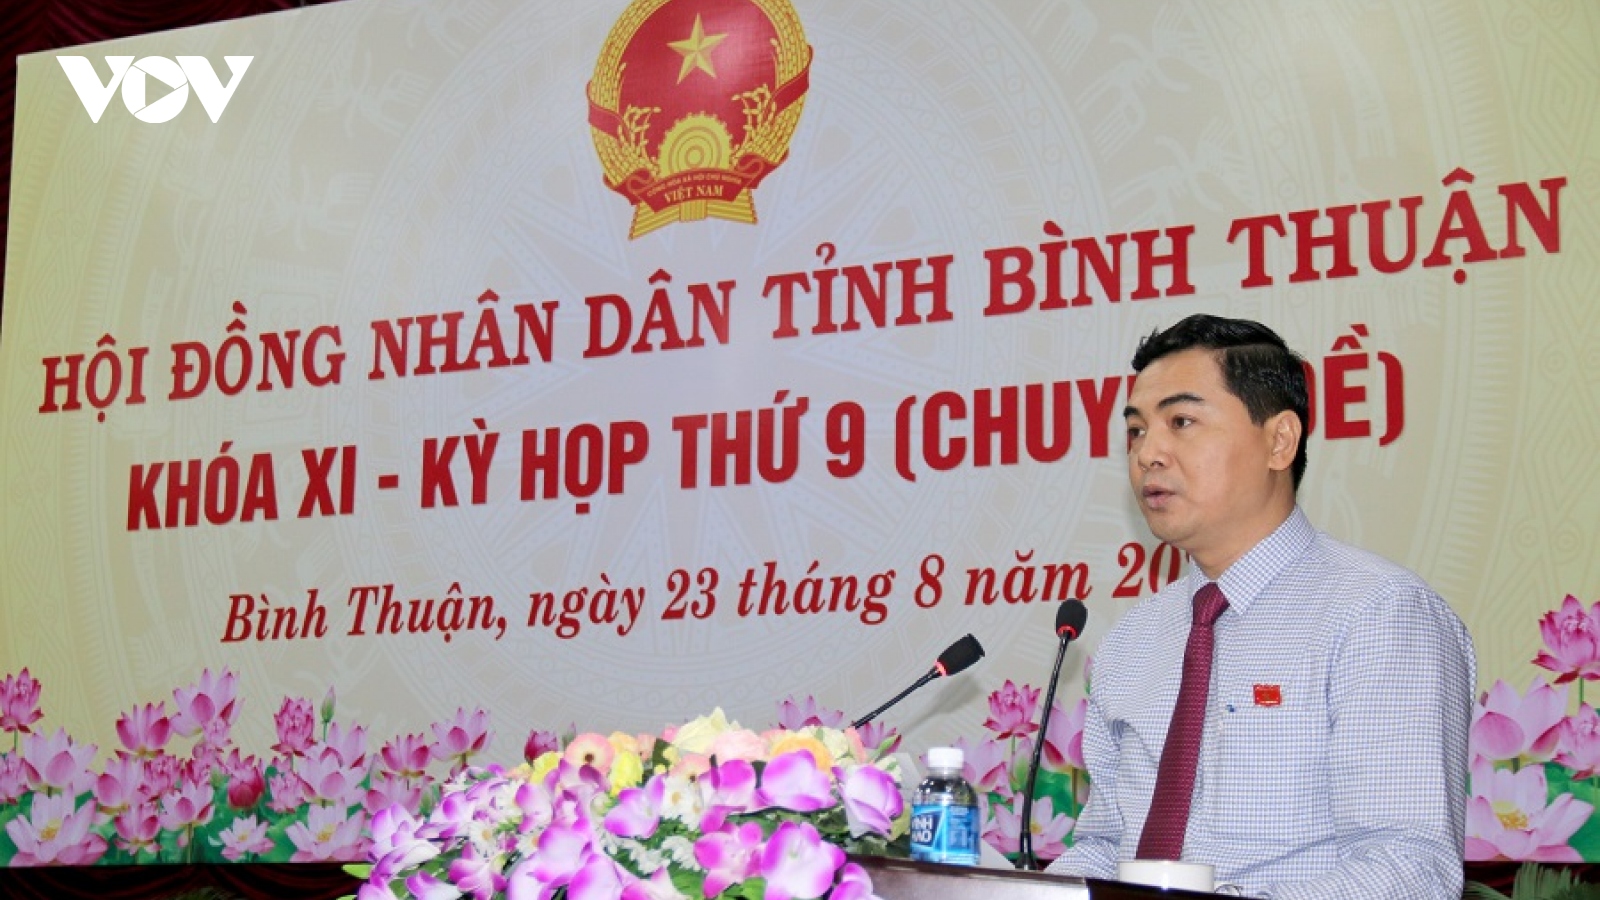 Bình Thuận sẽ thu hồi hơn 45.000 m2 đất để làm nhà ở xã hội